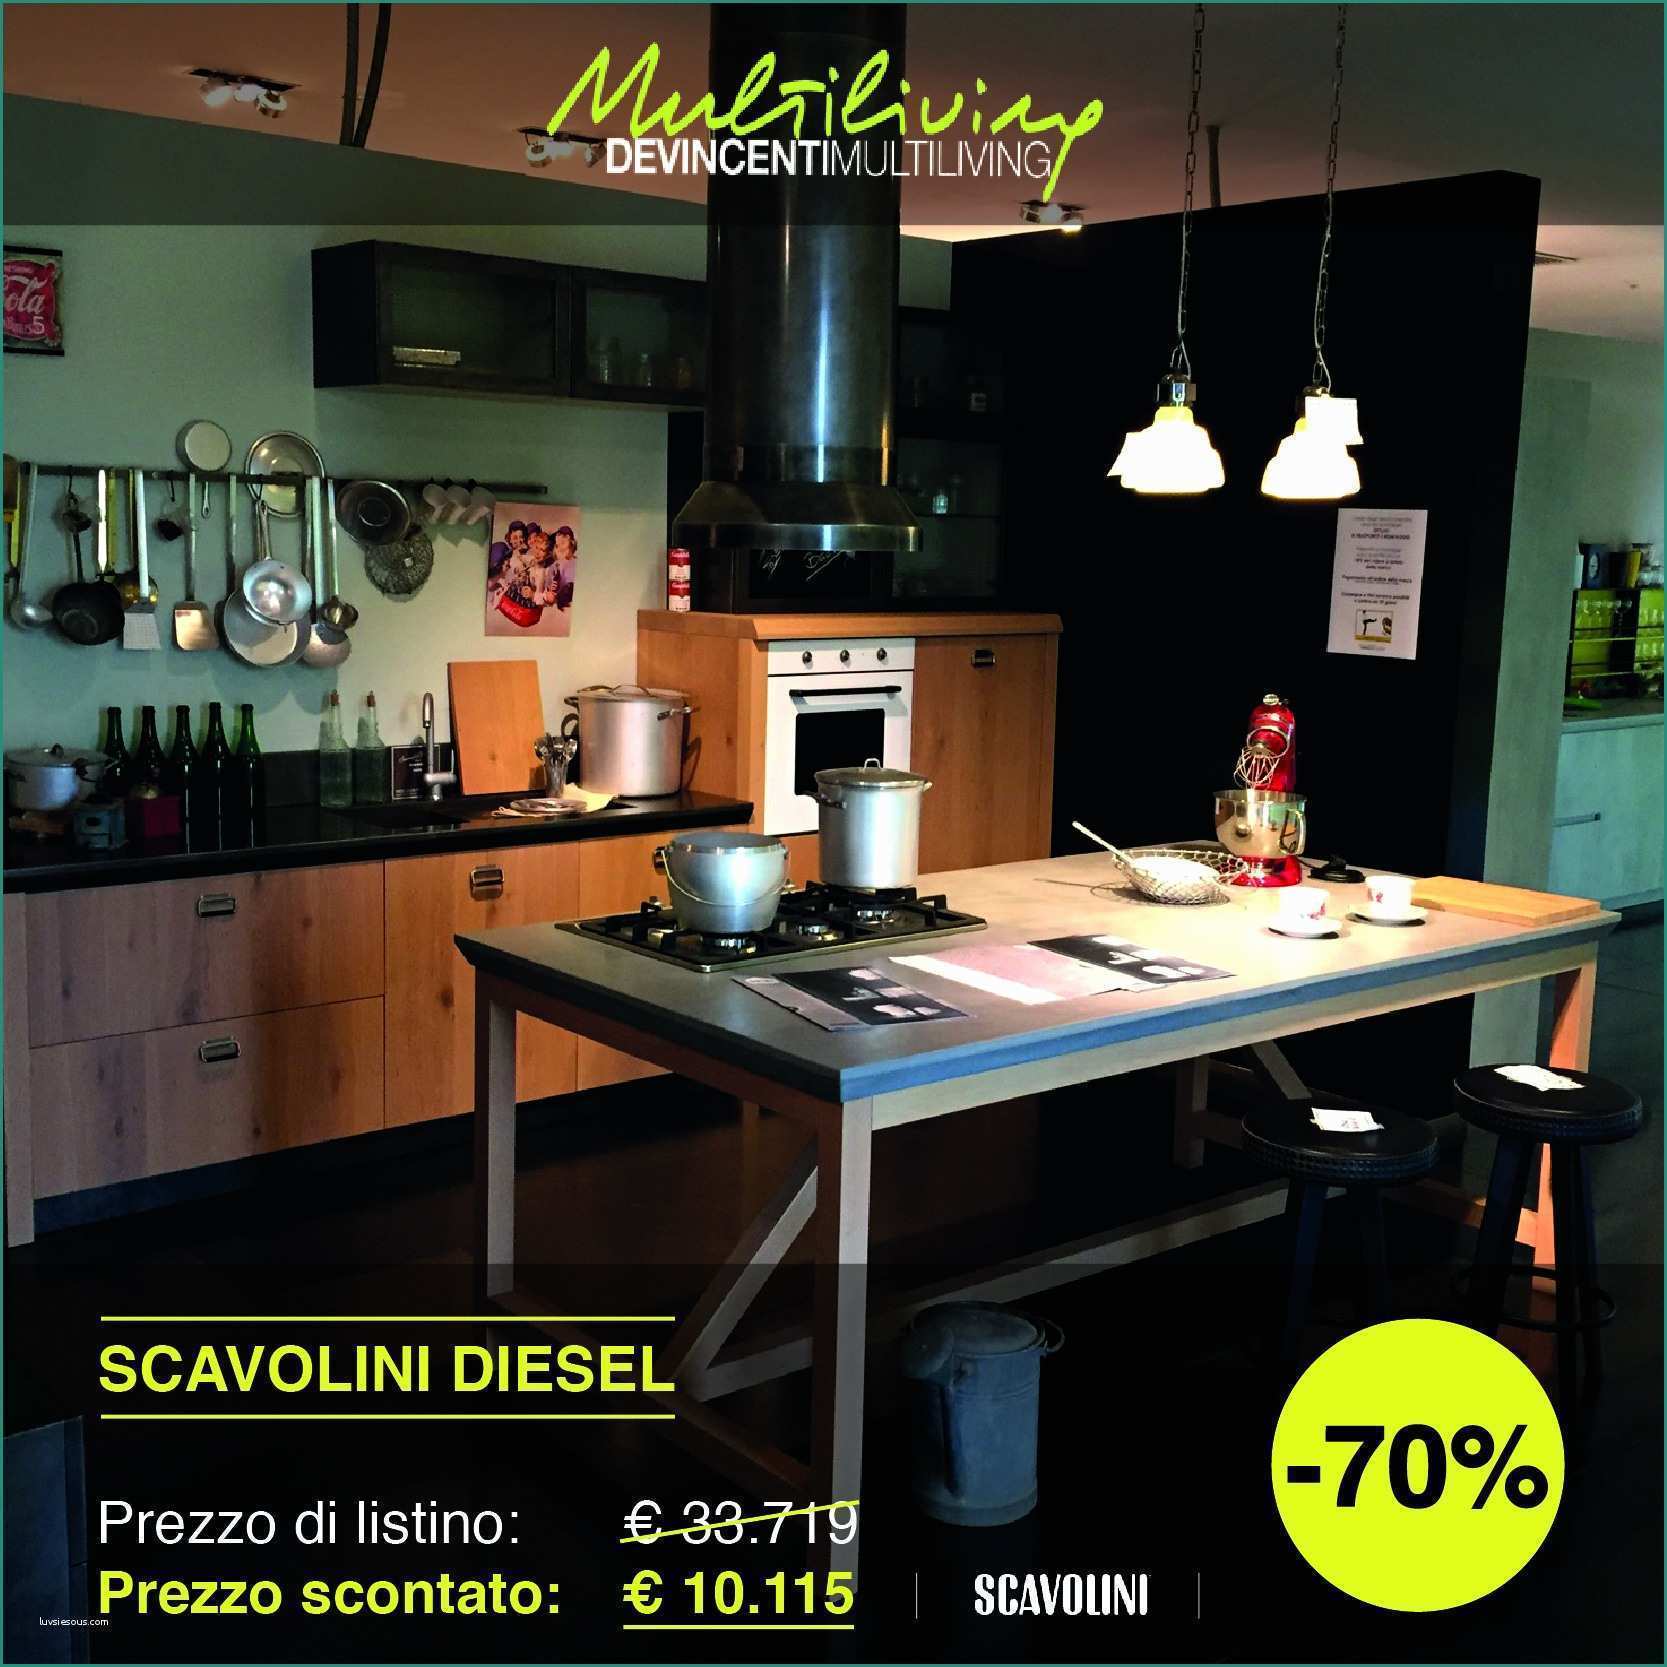 Cucina Scavolini Liberamente E Cucina Diesel Good Lo Stile Di Scavolini A Eurocucina with Cucina